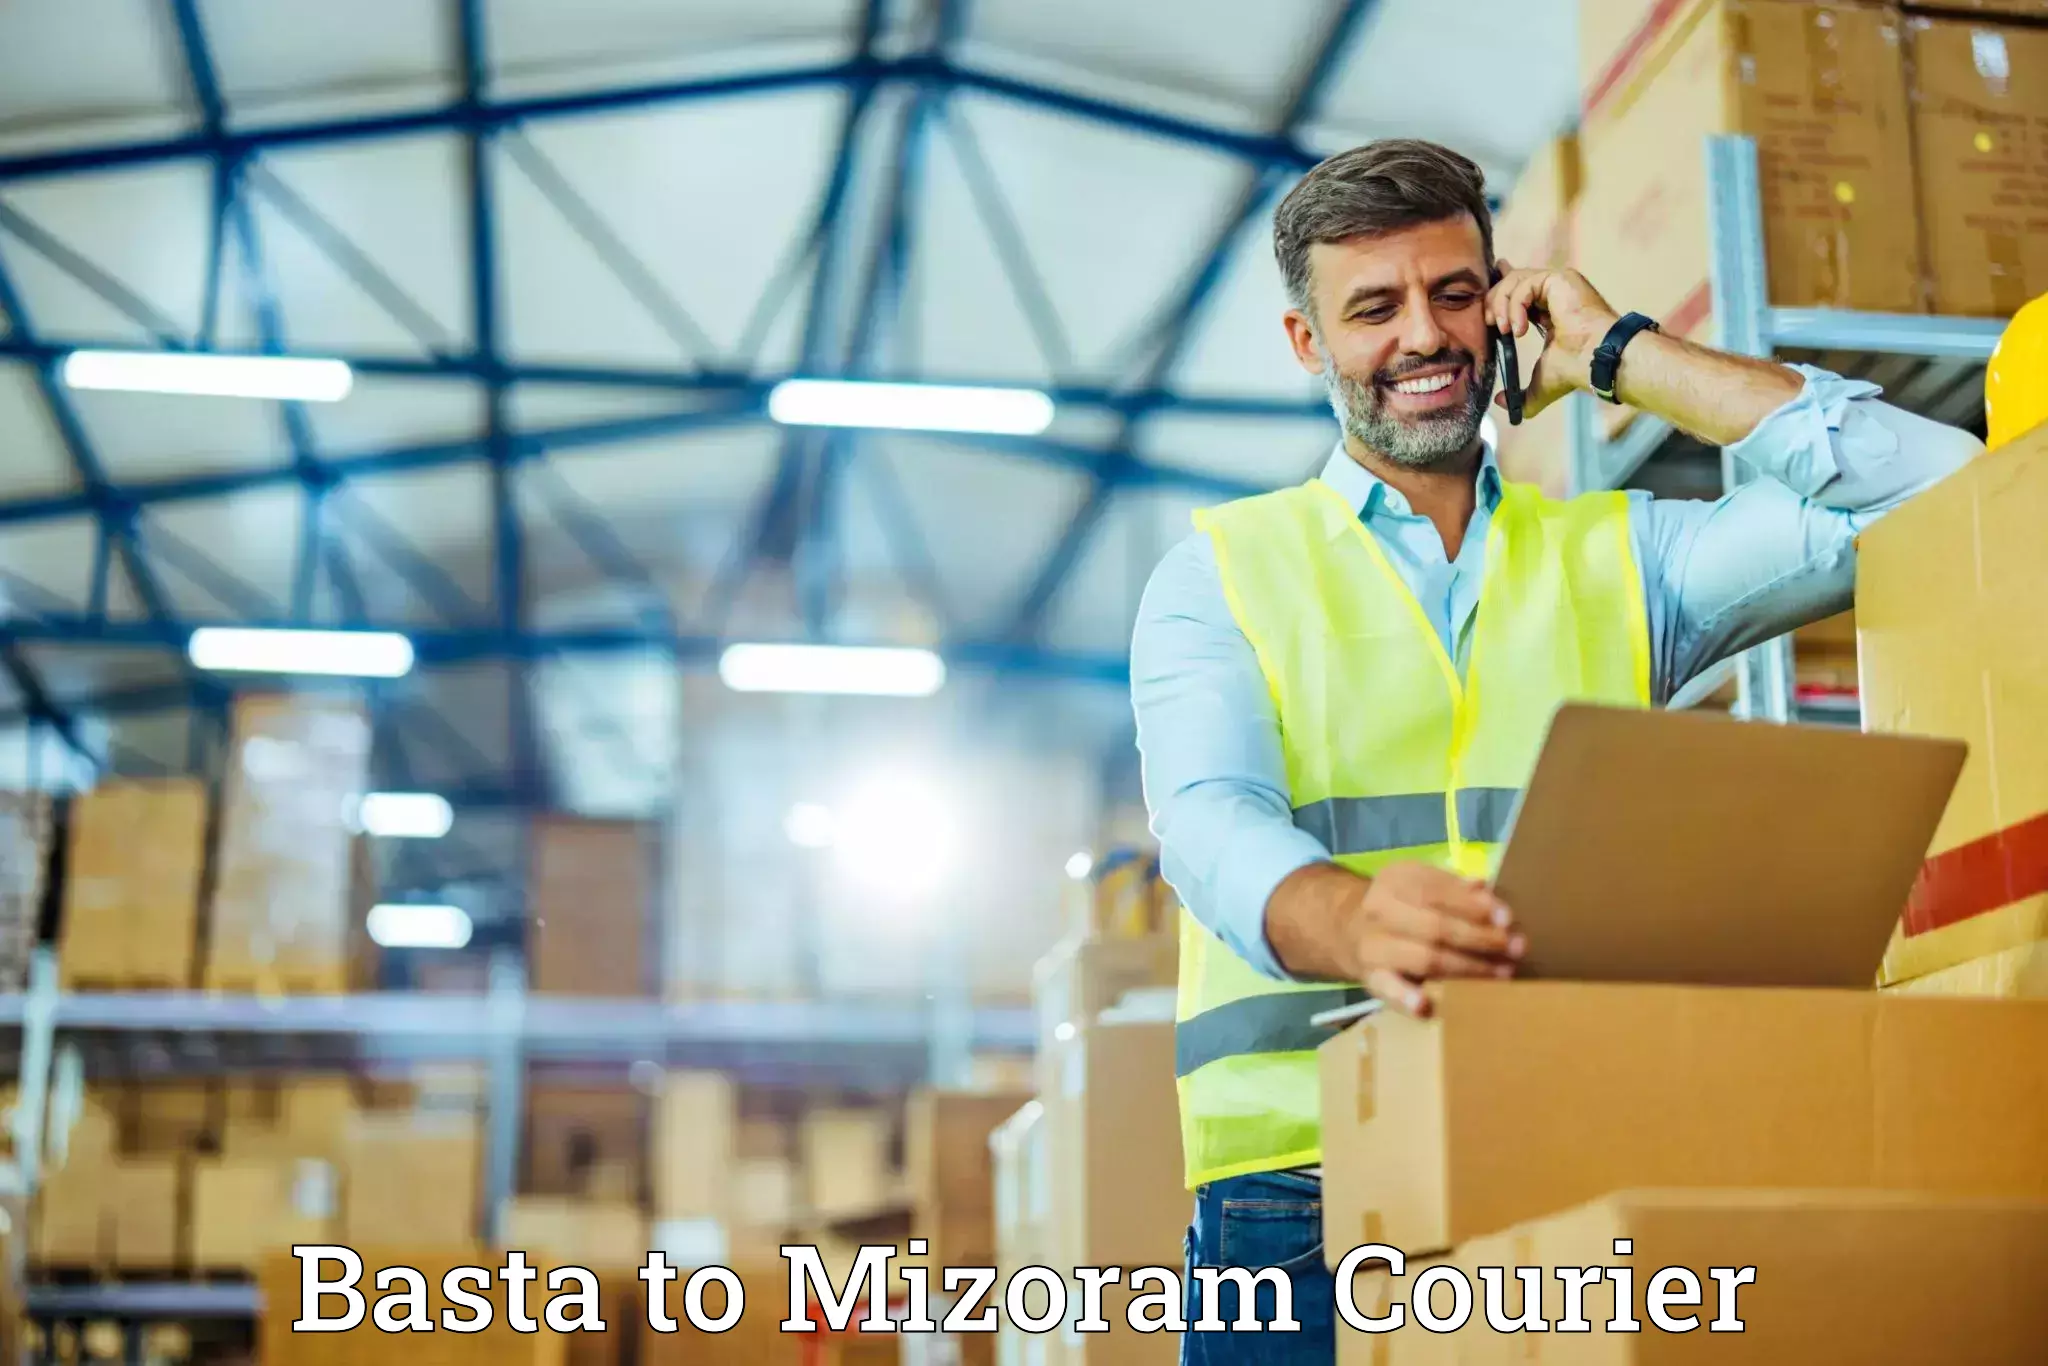 High-quality moving services Basta to Mizoram